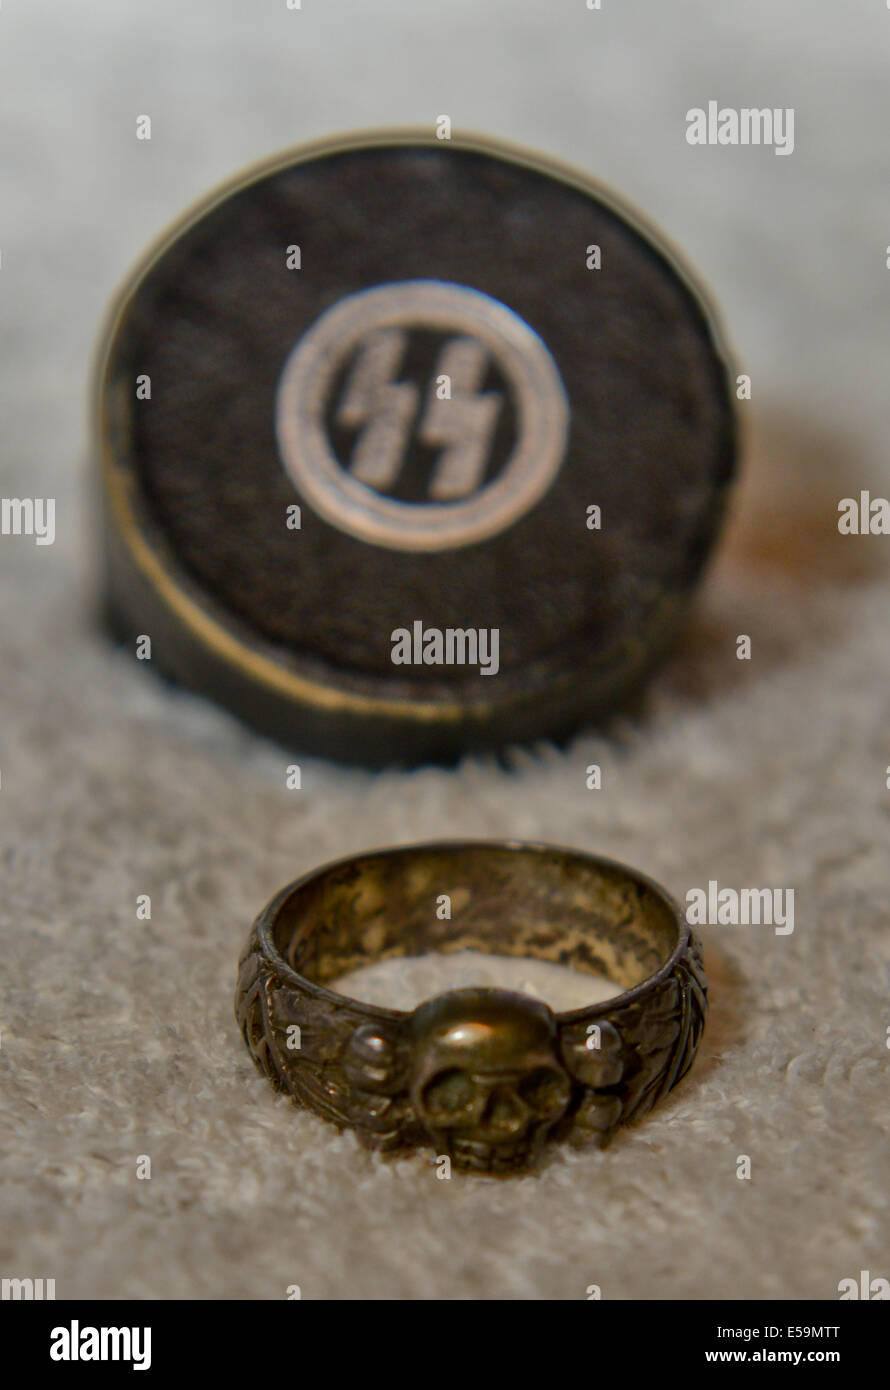 Foto di:Jules Annan immagine mostra:Originale SS naziste la morte della  testa dell'anello d'onore e scatola originale data ; 08/07/2014 Foto stock  - Alamy